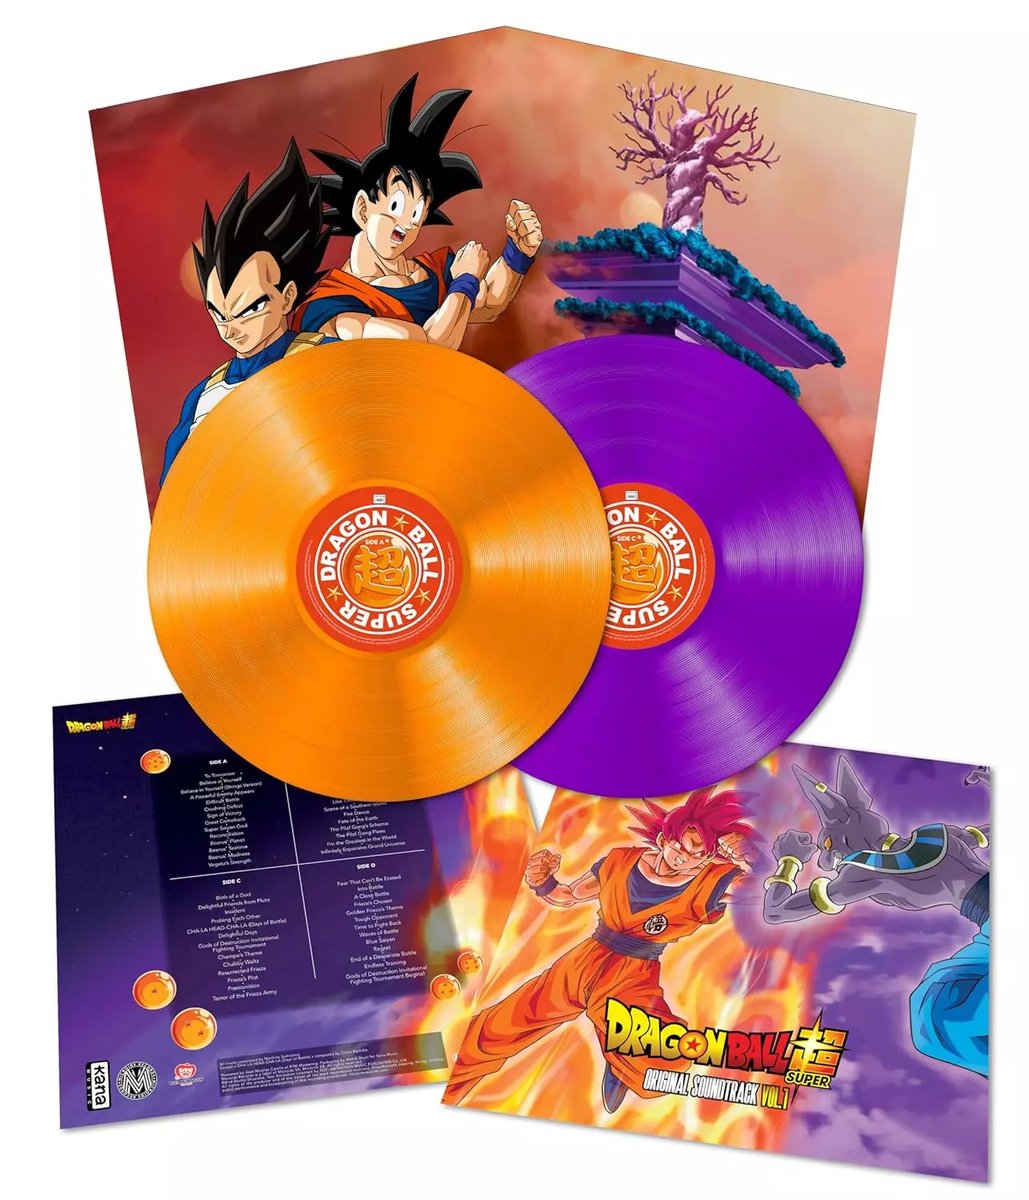 L'original soundtrack de Dragon Ball Super arrive en vinyle chez @MicroidsRecords manga-news.com/index.php/actu… #OST #DragonBall #DragonBallSuper #vinyl #vinyladdict #vinylrecord #vinylcollector #vinylcommunity #animevinyl